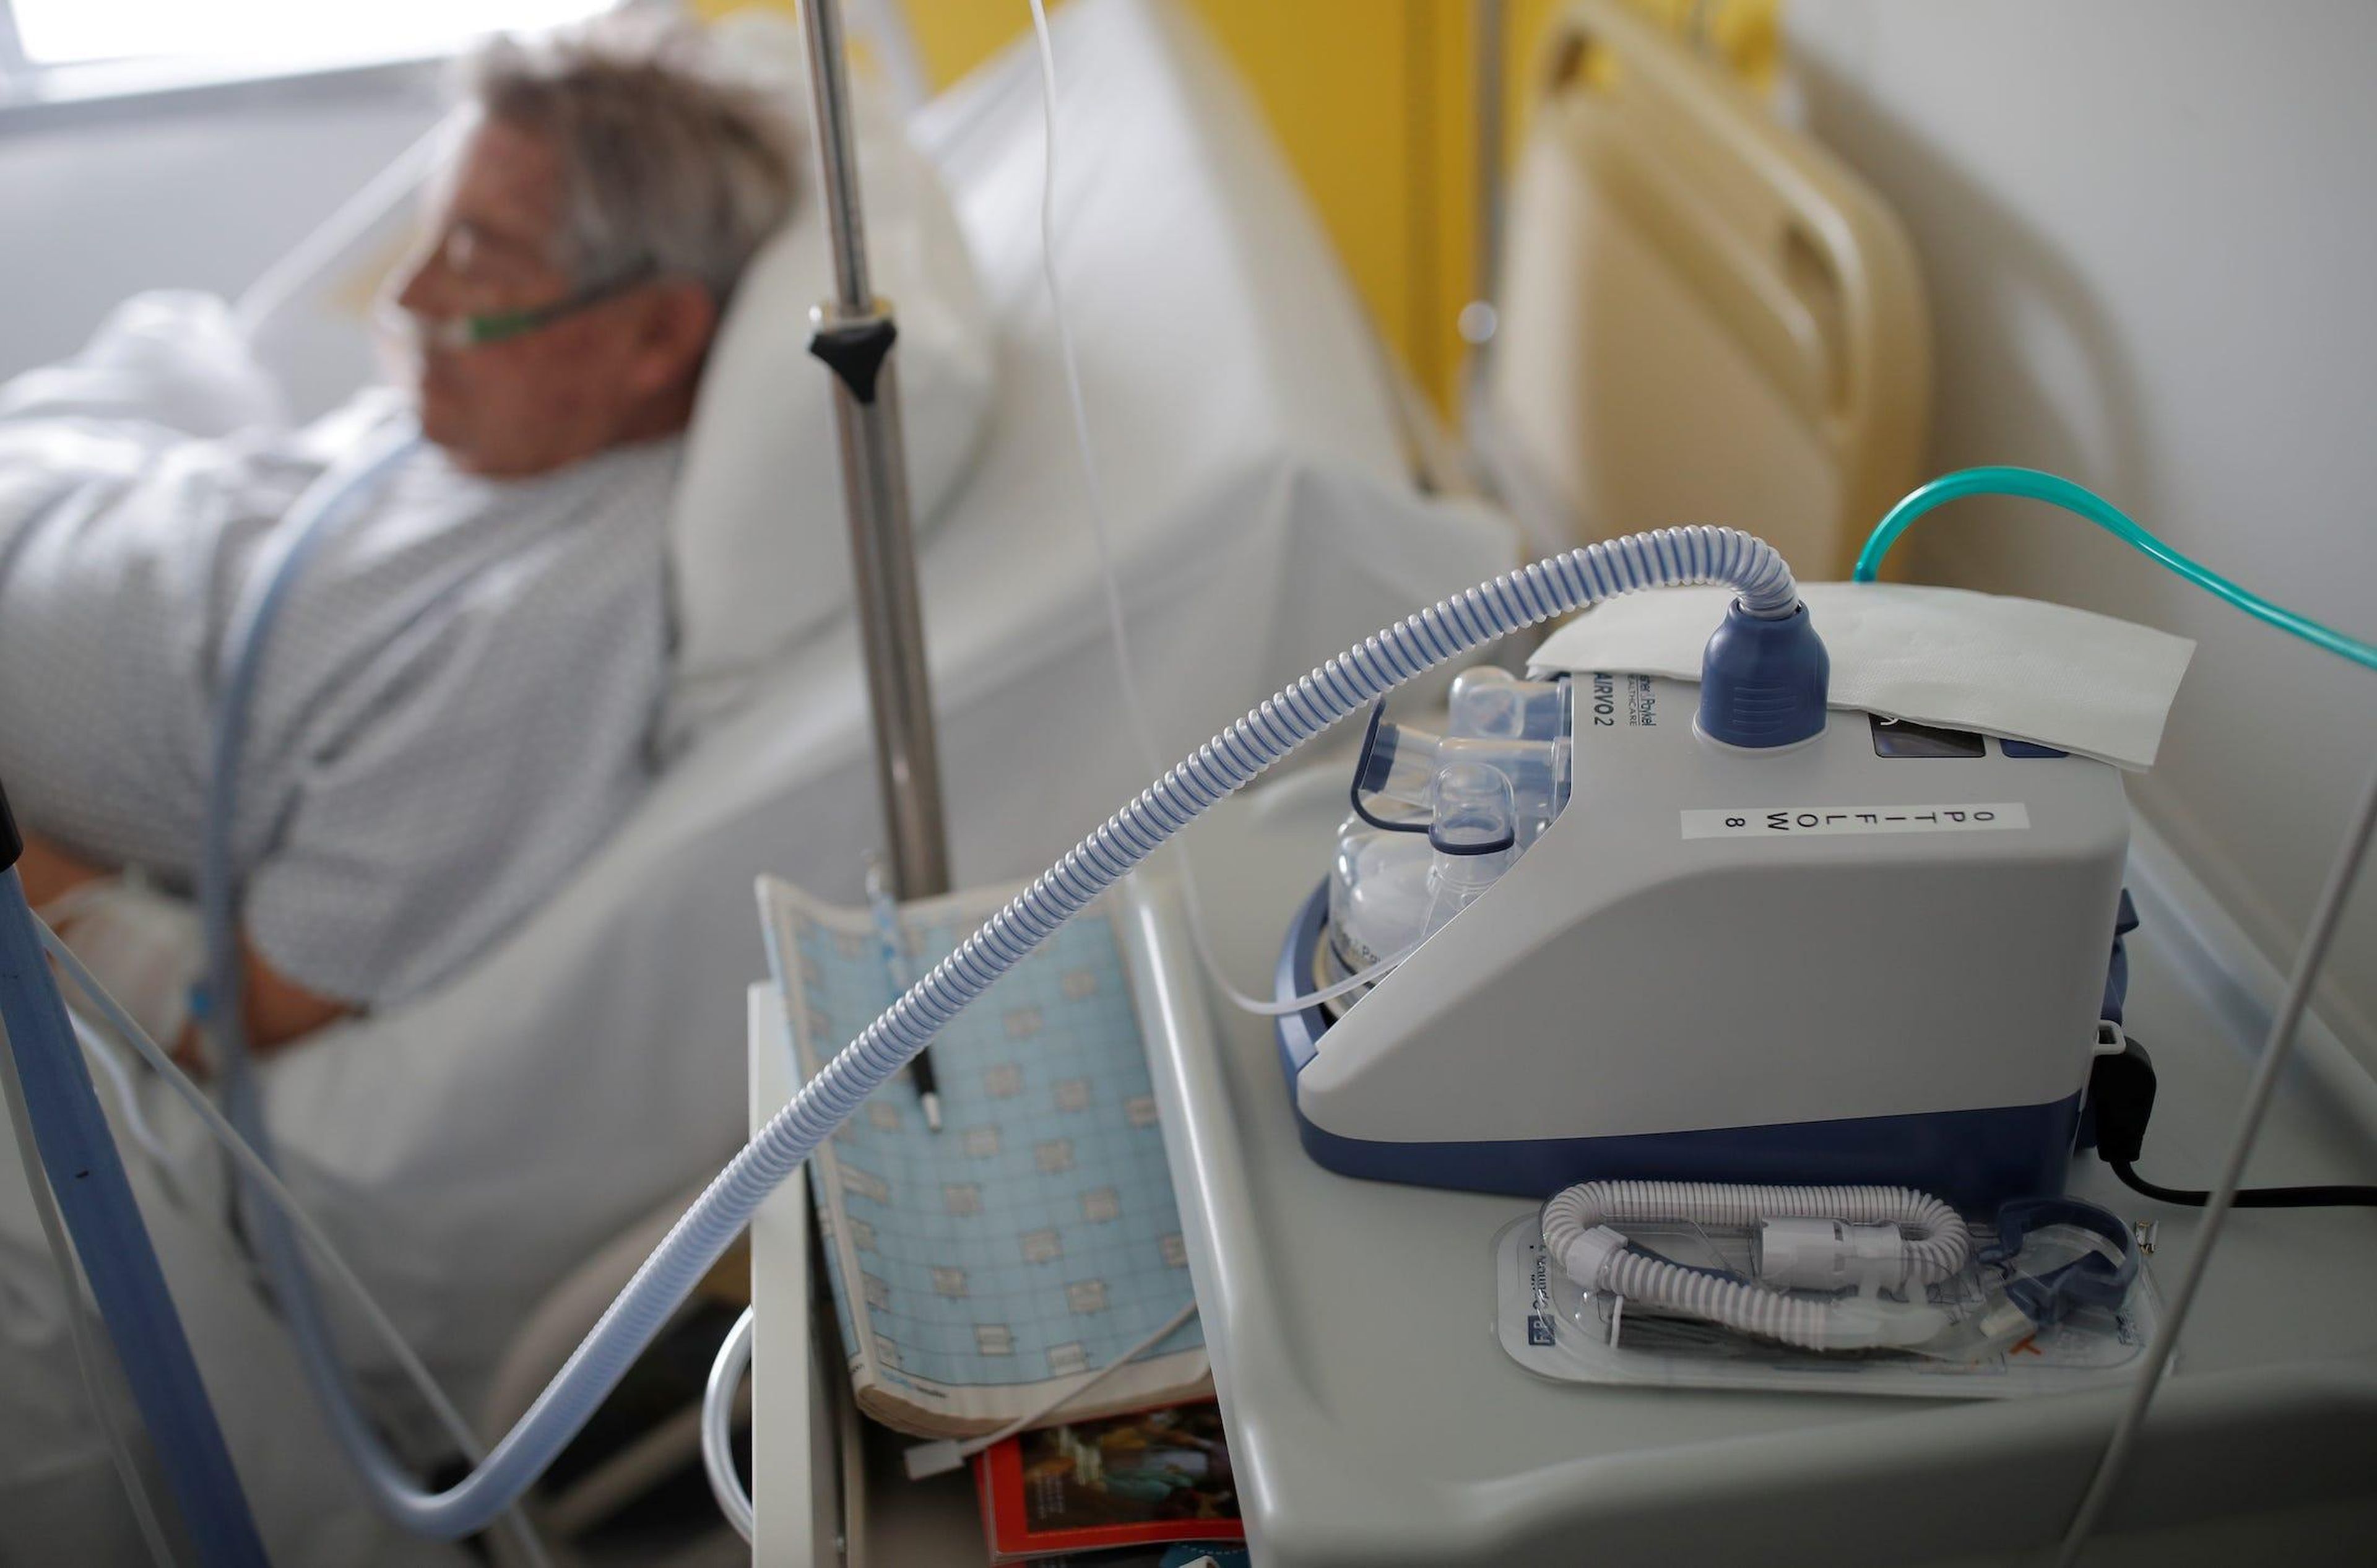 Un ventilador nasal es retratado mientras un paciente que sufre de COVID-19 es tratado en un hospital pulmonar en Vannes, Francia, el 20 de marzo de 2020.